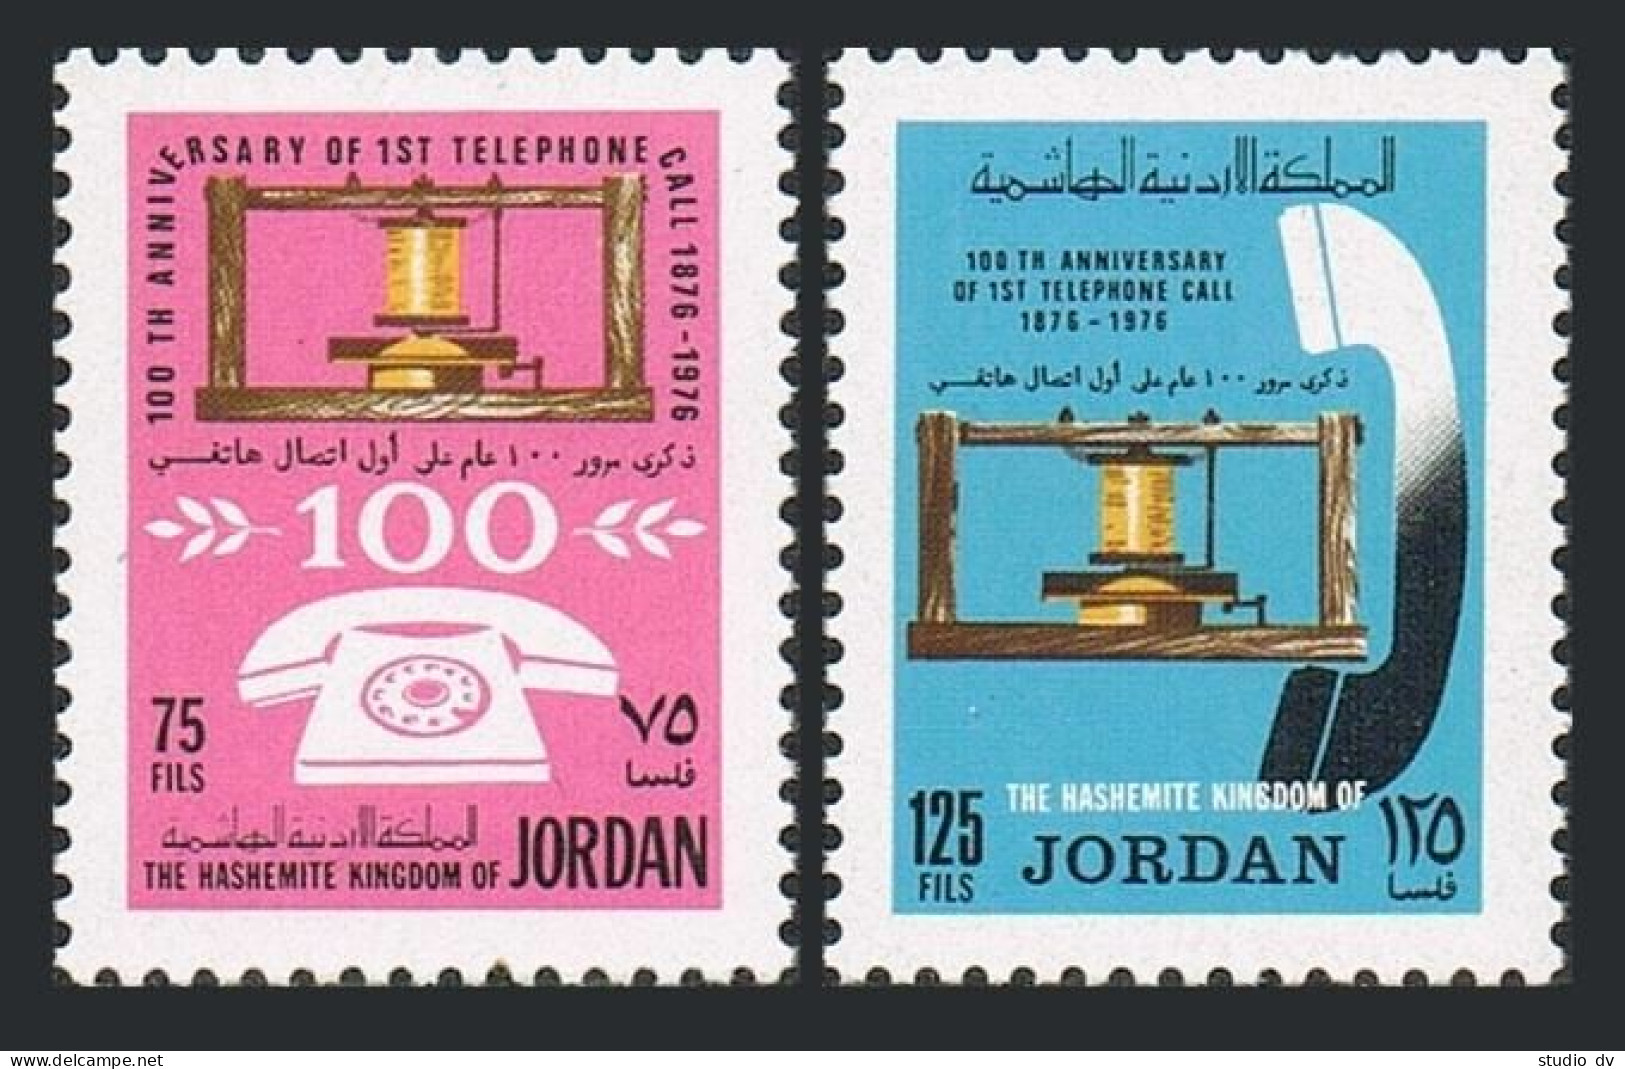 Jordan 999-1000,MNH.Michel 1067-1068. Centenary Of Telephone,1976. - Jordanien